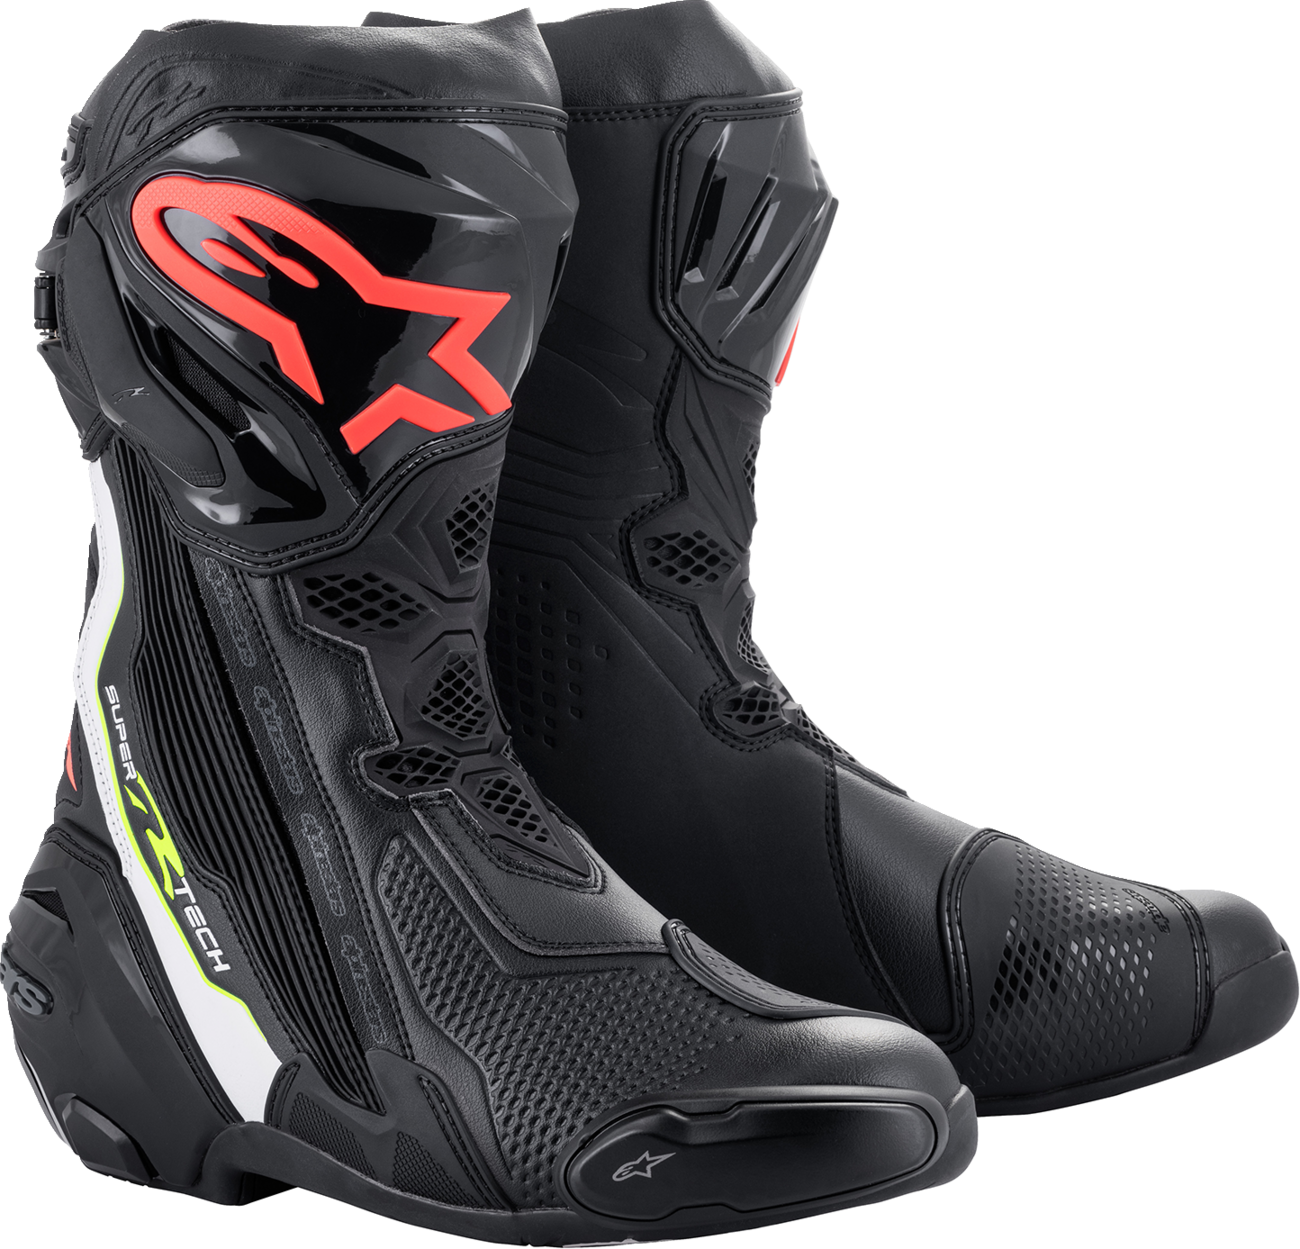 ALPINESTARS Supertech R Boots - Black/Red - US 11.5 / EU 46 2220021-1236-46